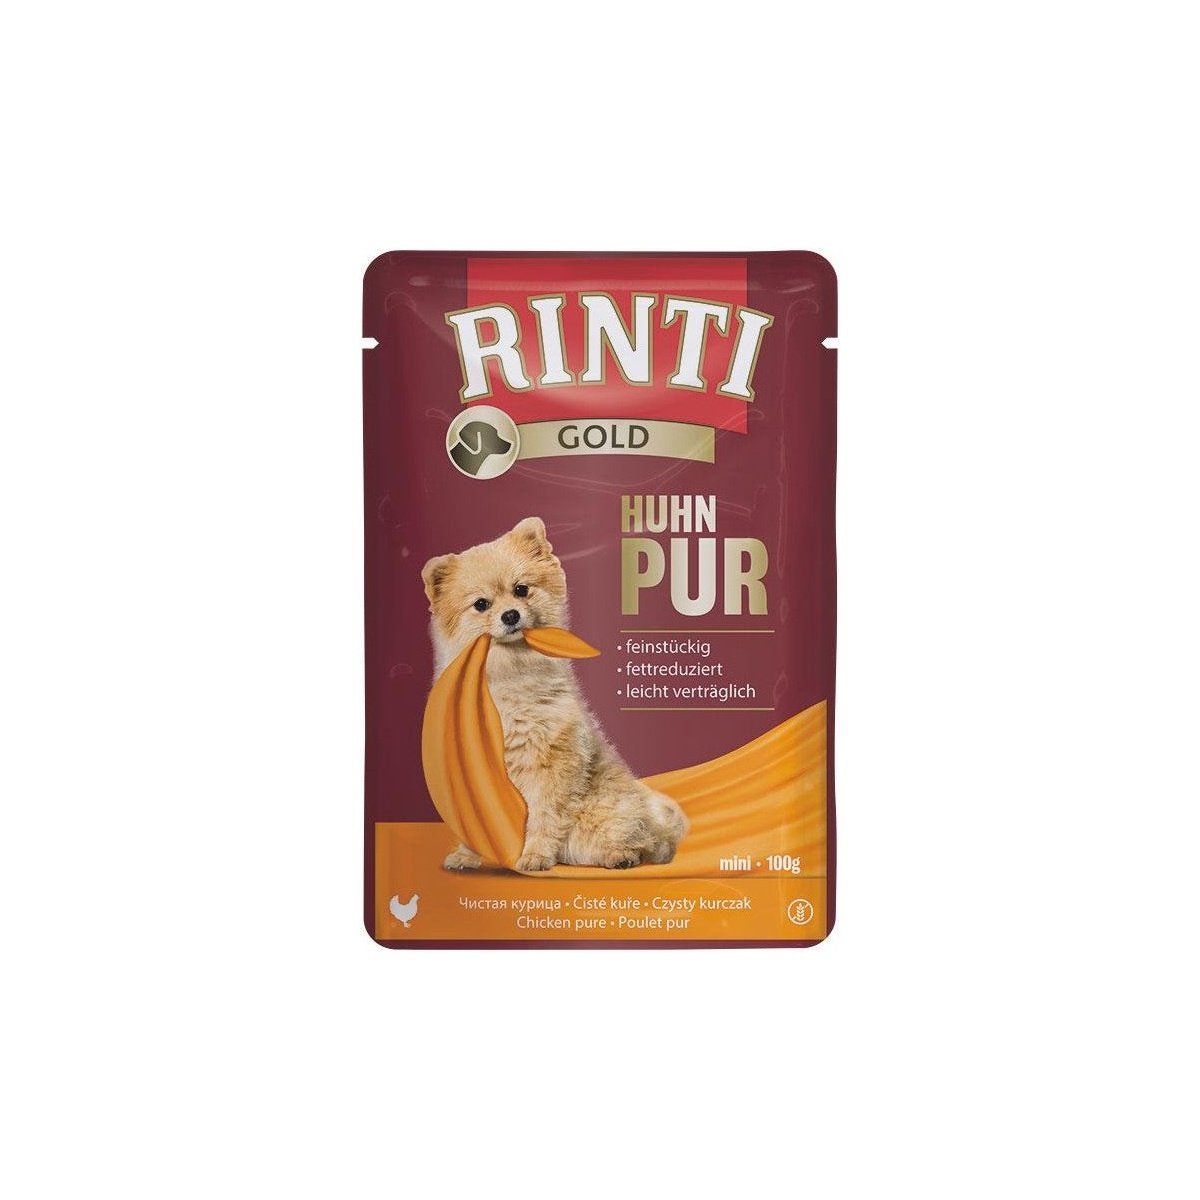 Artikel mit dem Namen Rinti Gold Huhn Pur im Shop von zoo.de , dem Onlineshop für nachhaltiges Hundefutter und Katzenfutter.